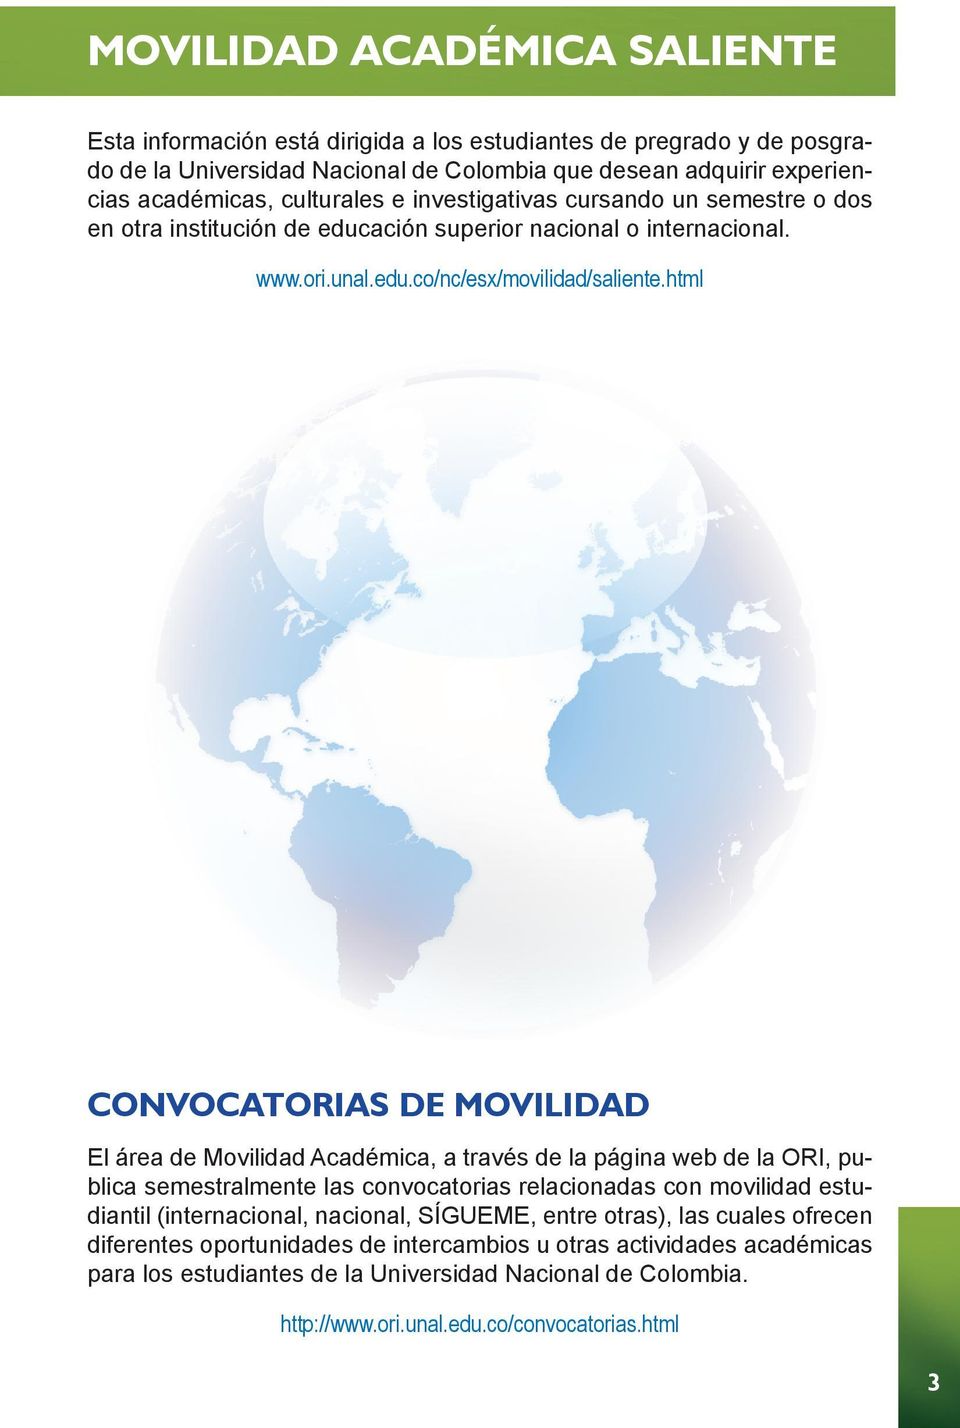 html CONVOCATORIAS DE MOVILIDAD El área de Movilidad Académica, a través de la página web de la ORI, publica semestralmente las convocatorias relacionadas con movilidad estudiantil (internacional,